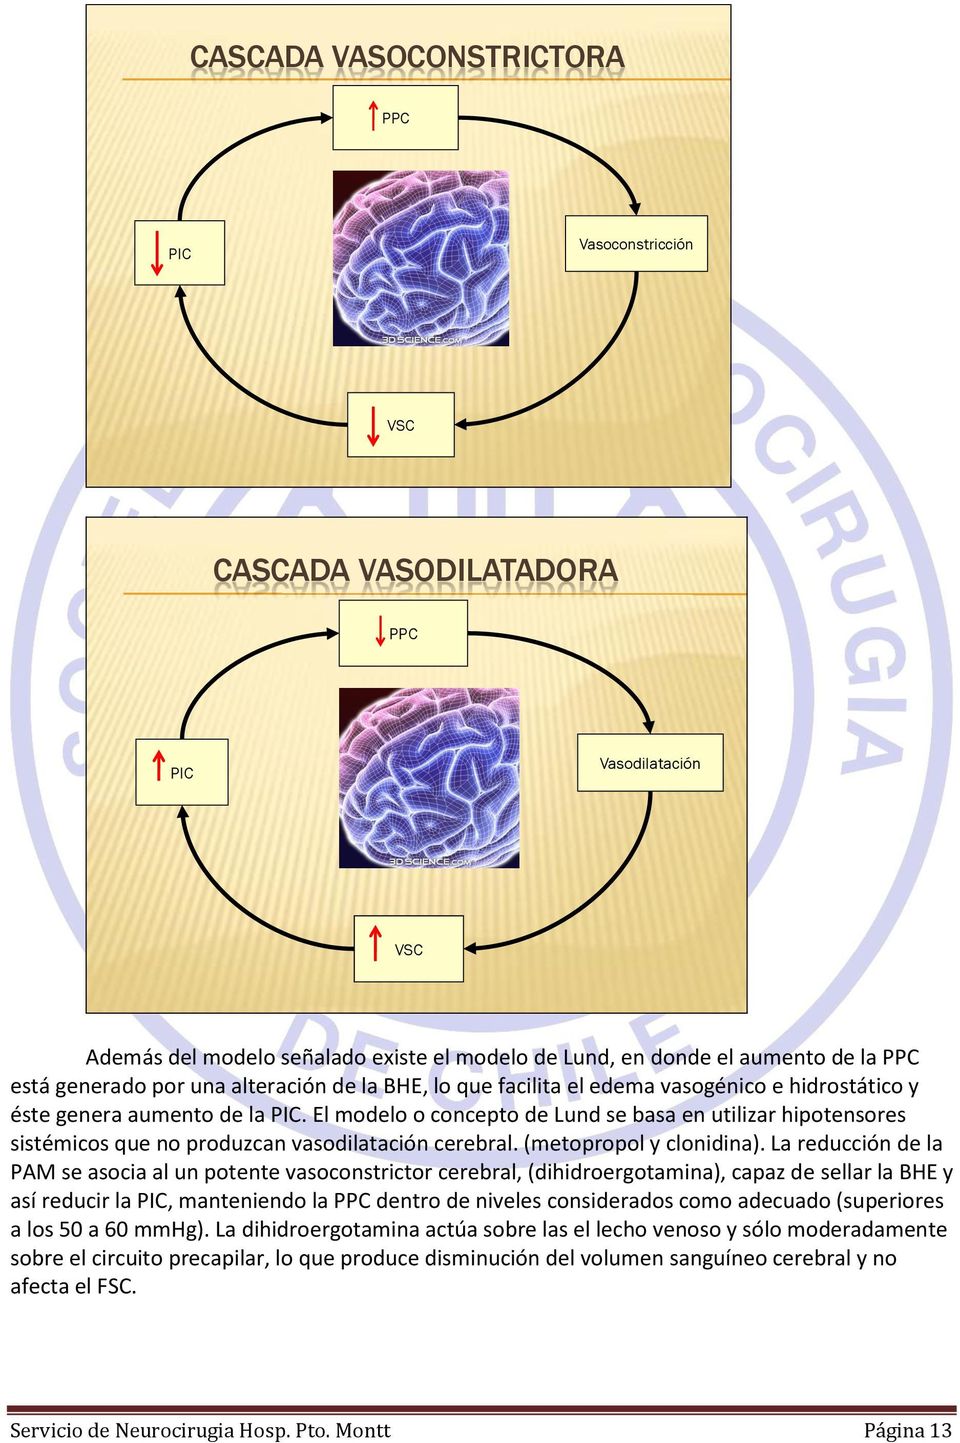 El modelo o concepto de Lund se basa en utilizar hipotensores sistémicos que no produzcan vasodilatación cerebral. (metopropol y clonidina).